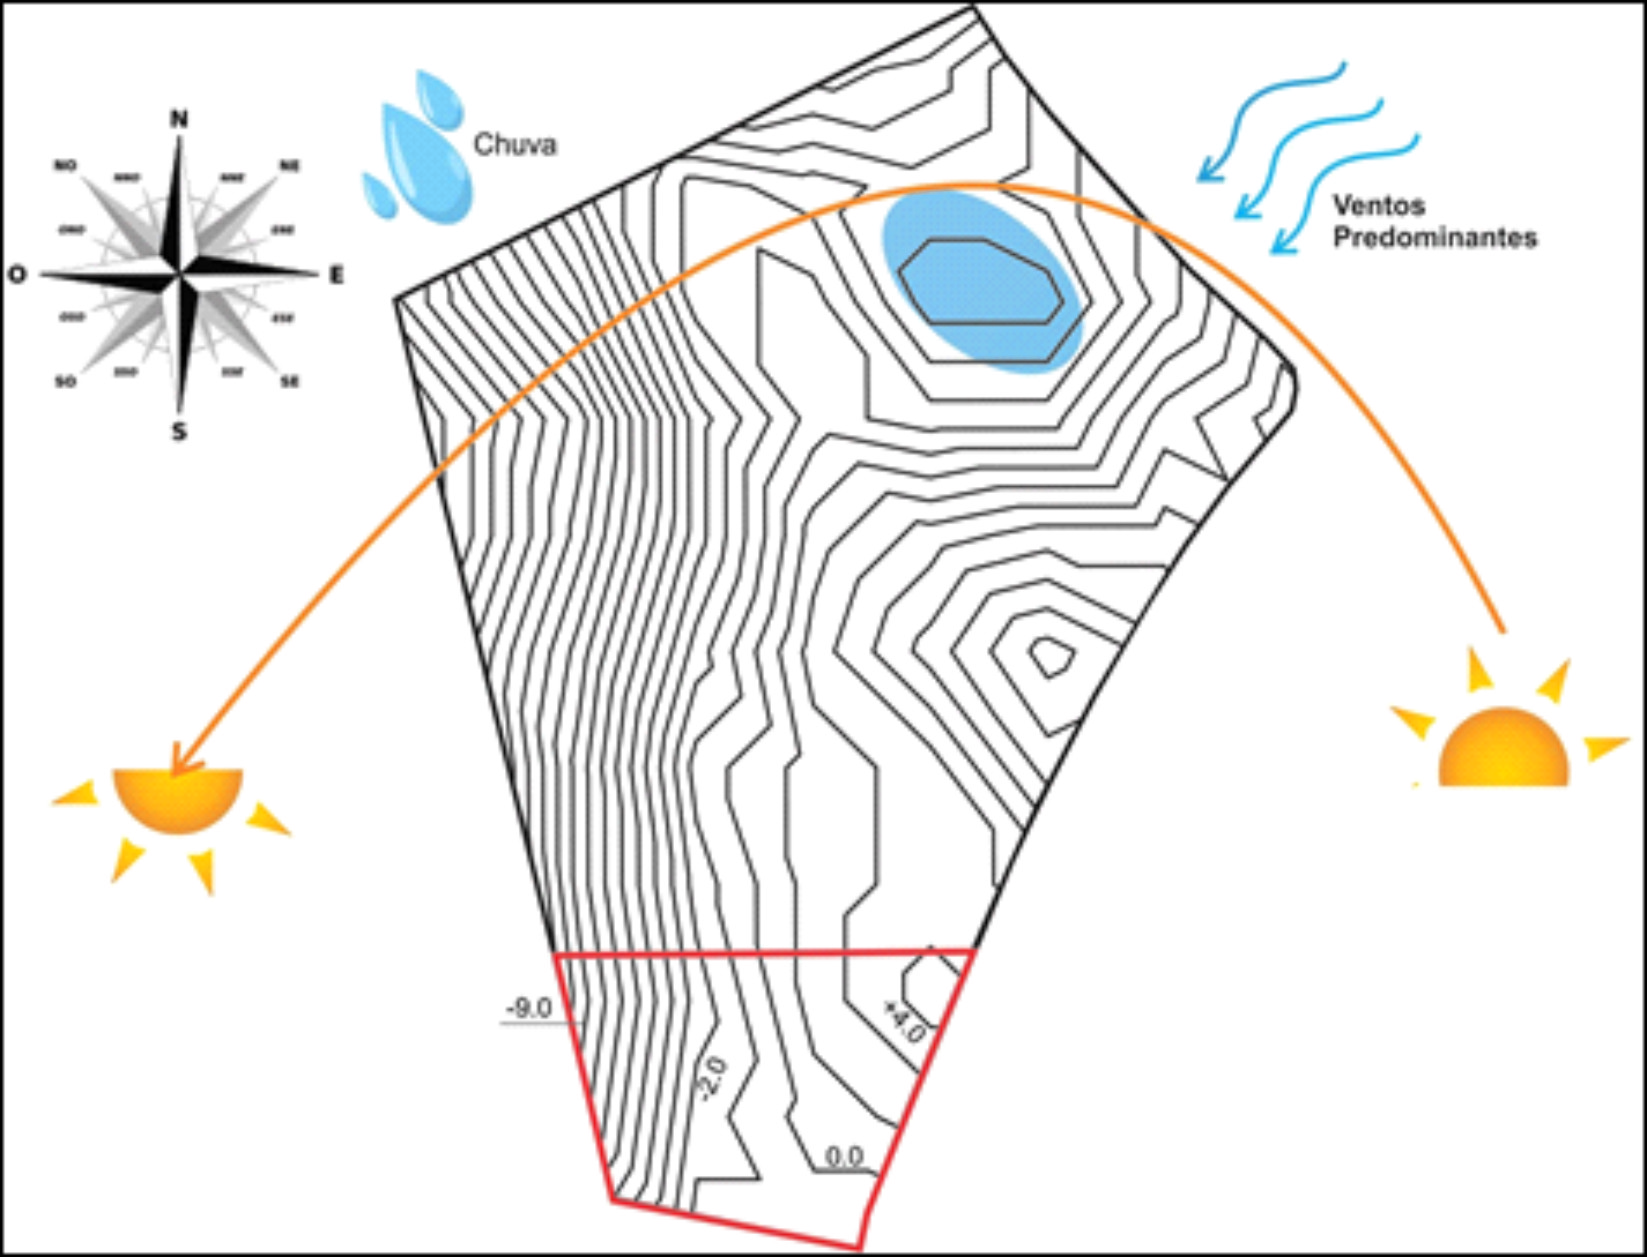 Figura 1 – Insolação, ventos predominantes e topografia da área de intervenção (FABIANA MENEGON, 2019).